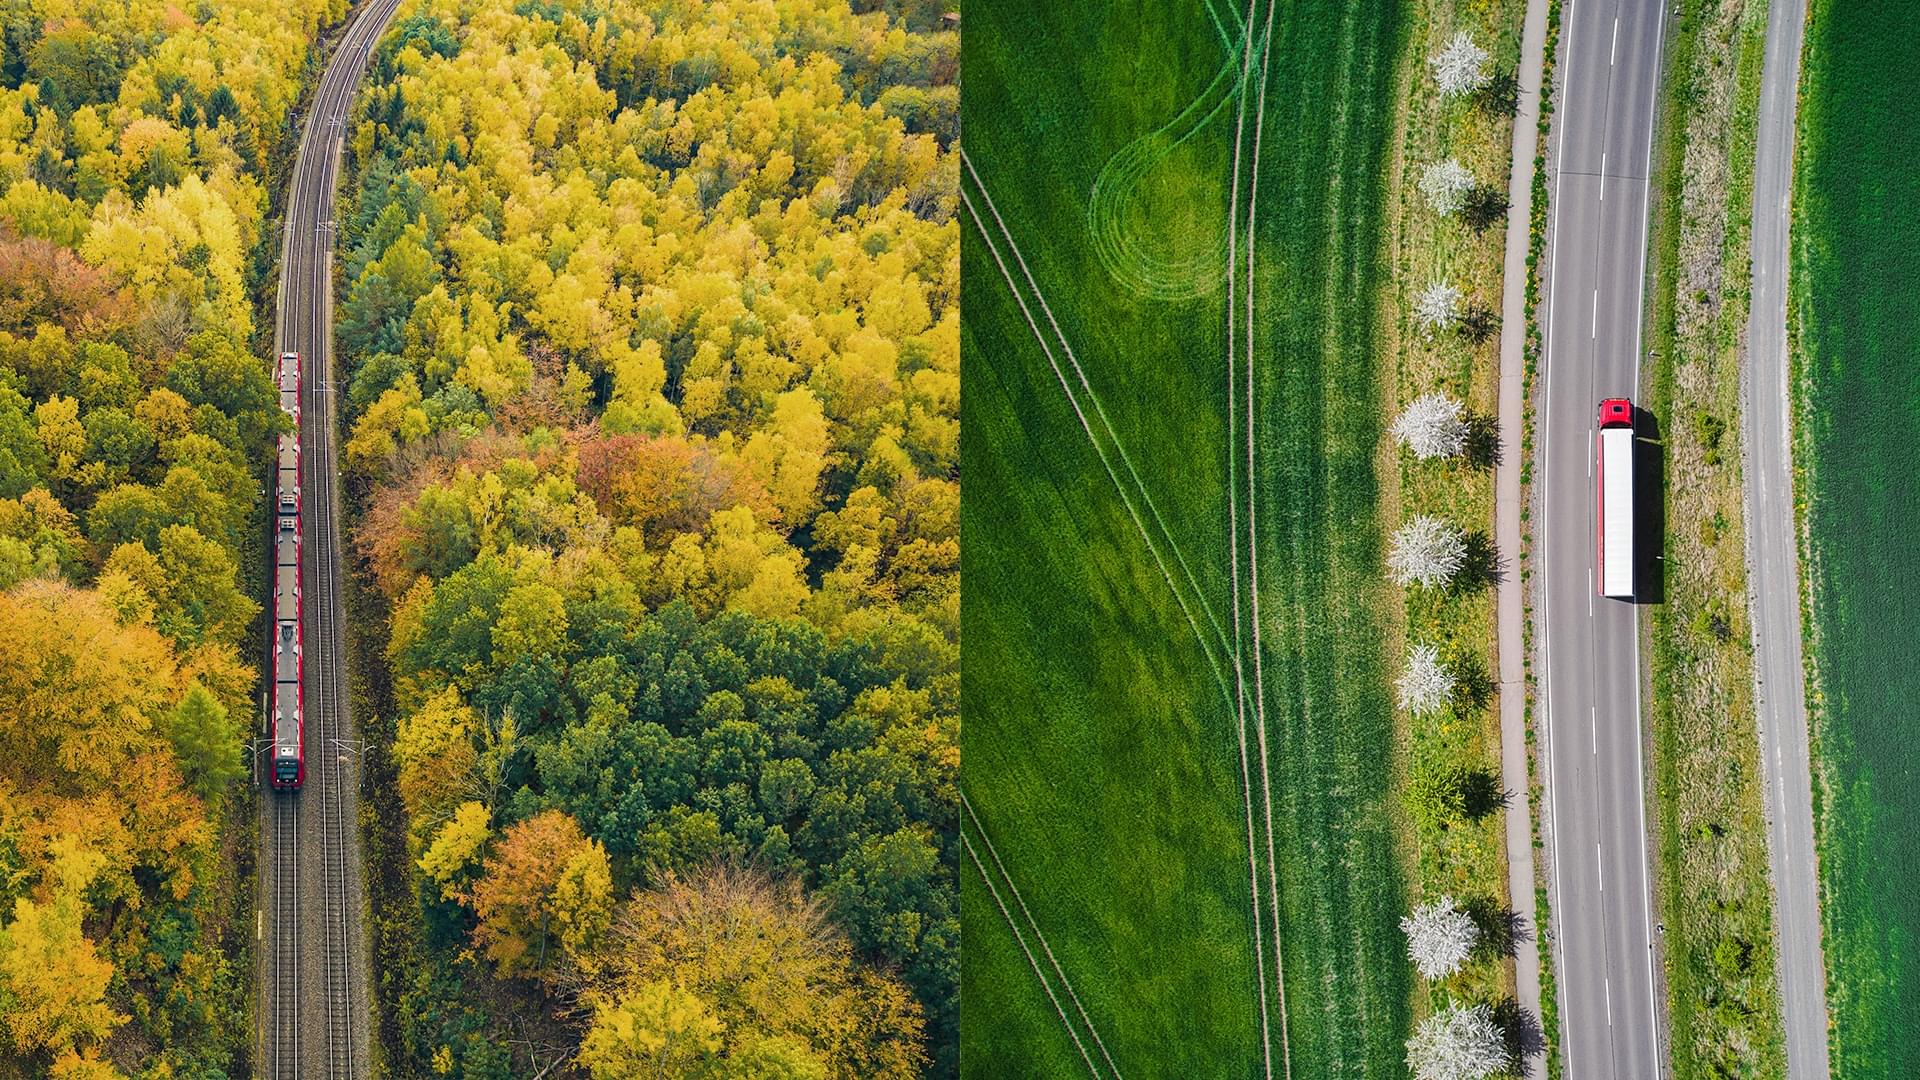 Fotocollage aus zwei Bildern, die aus der Vogelperspektive fotografiert sind: Links fährt ein Zug durch einen Herbstwald; rechts fährt ein Lkw durch grüne Felder.